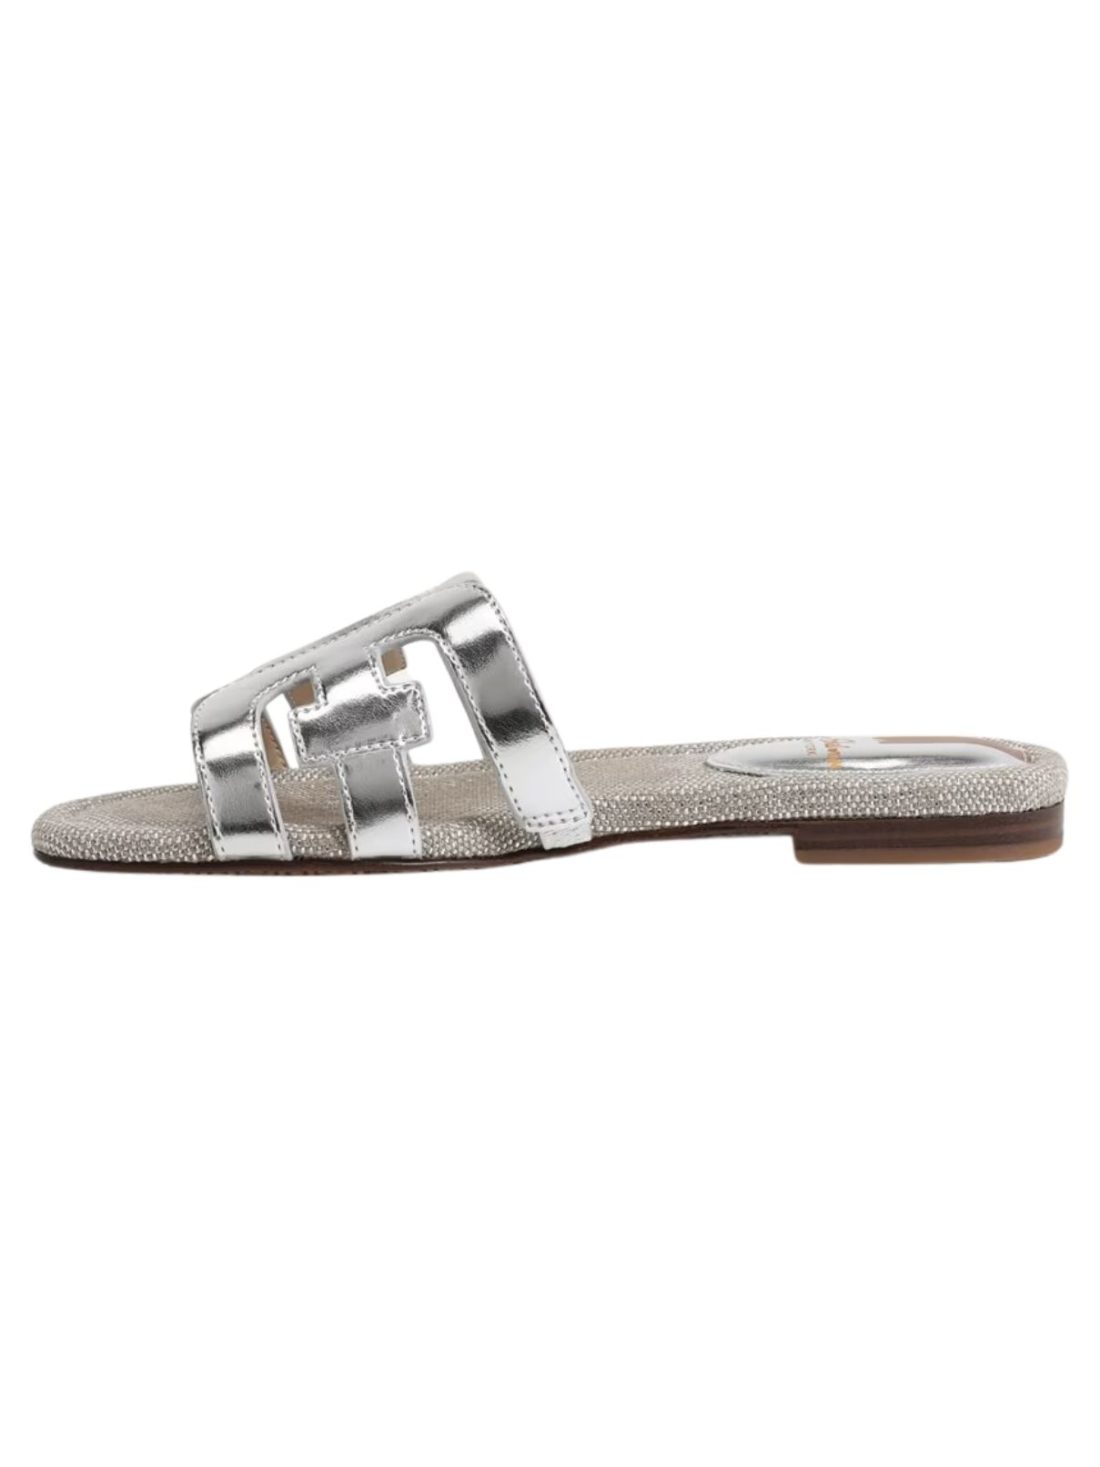 sam edelman bay sandal in silver/silver